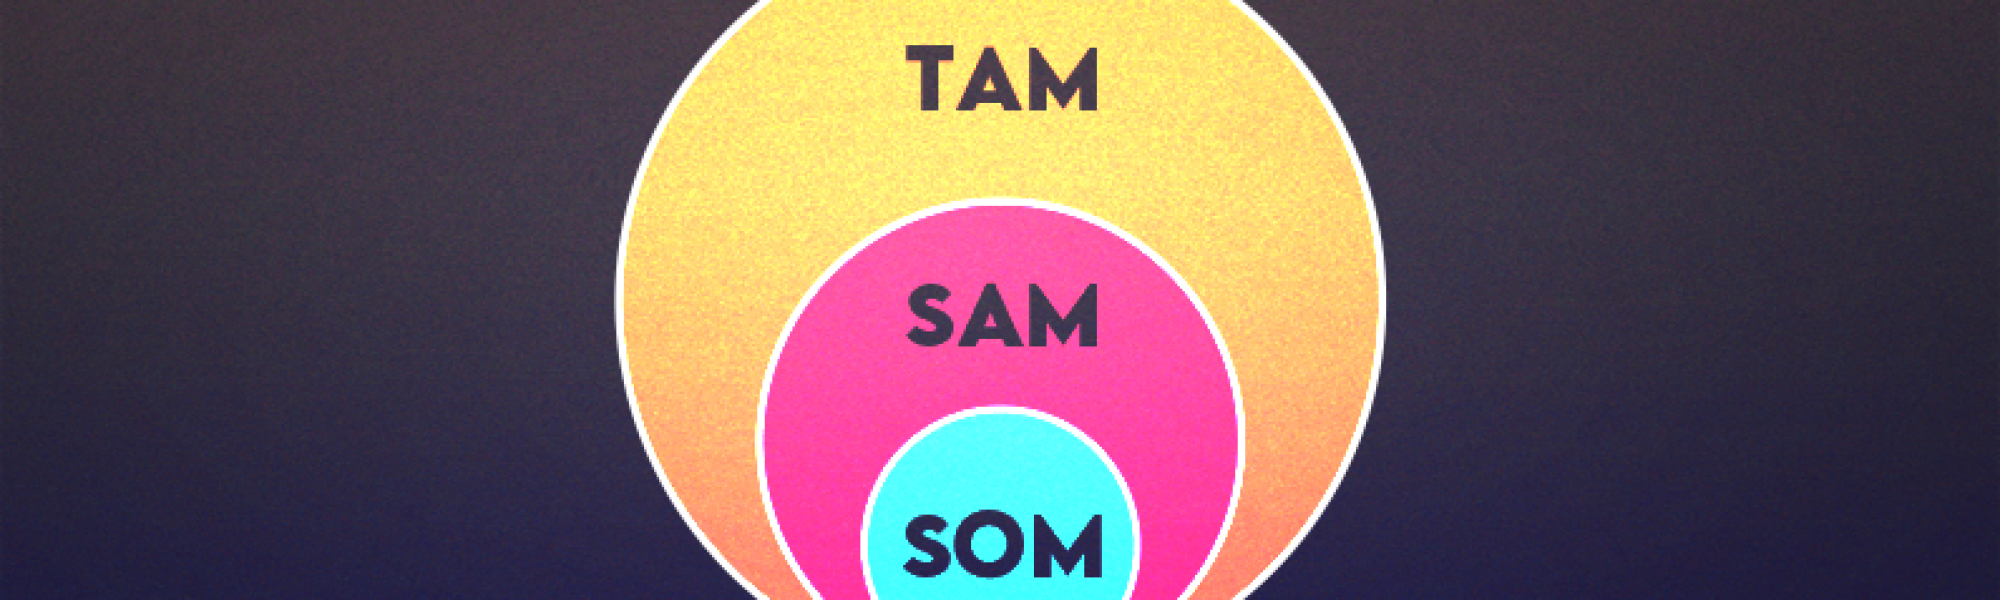 Tam-Sam-Som